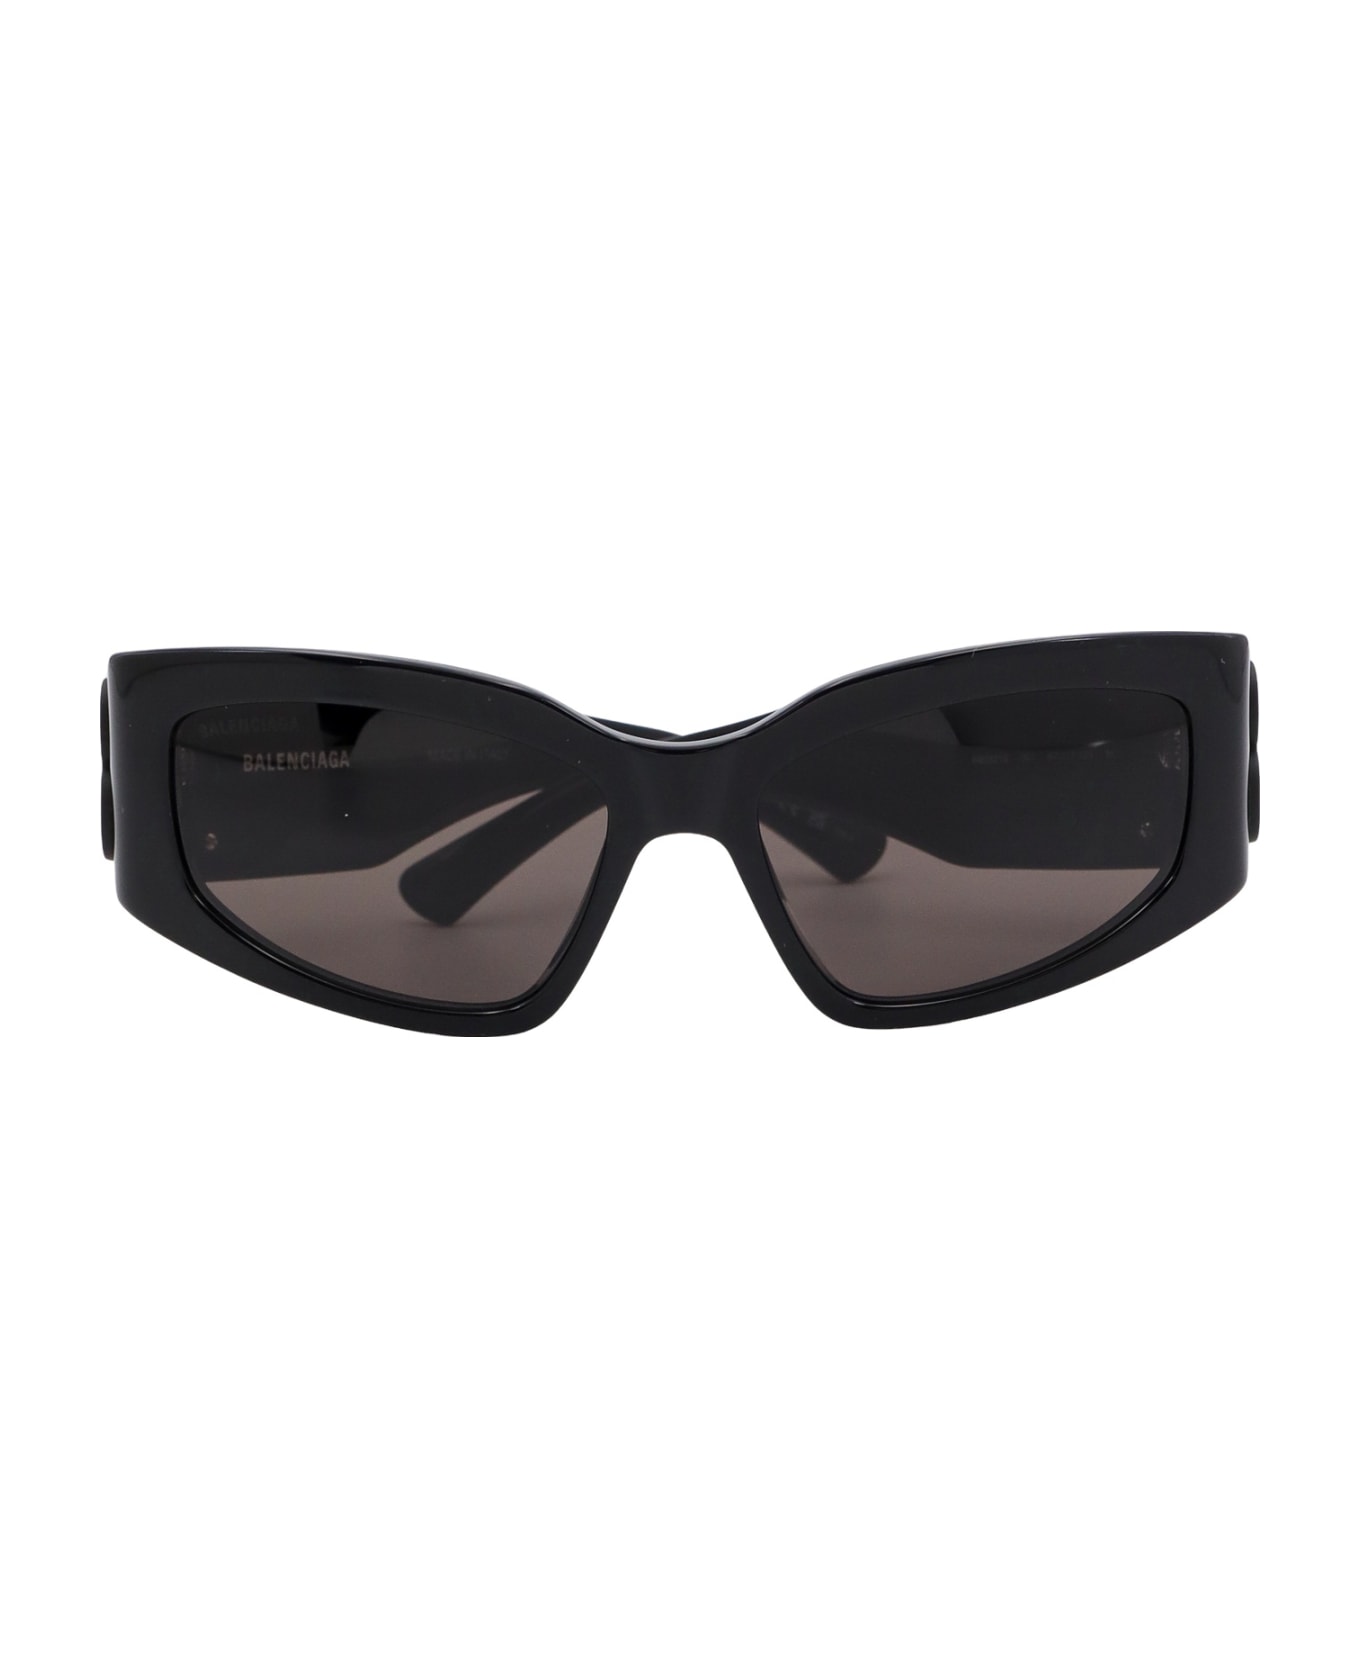 Balenciaga Eyewear Bossy Cat Sunglasses - Black